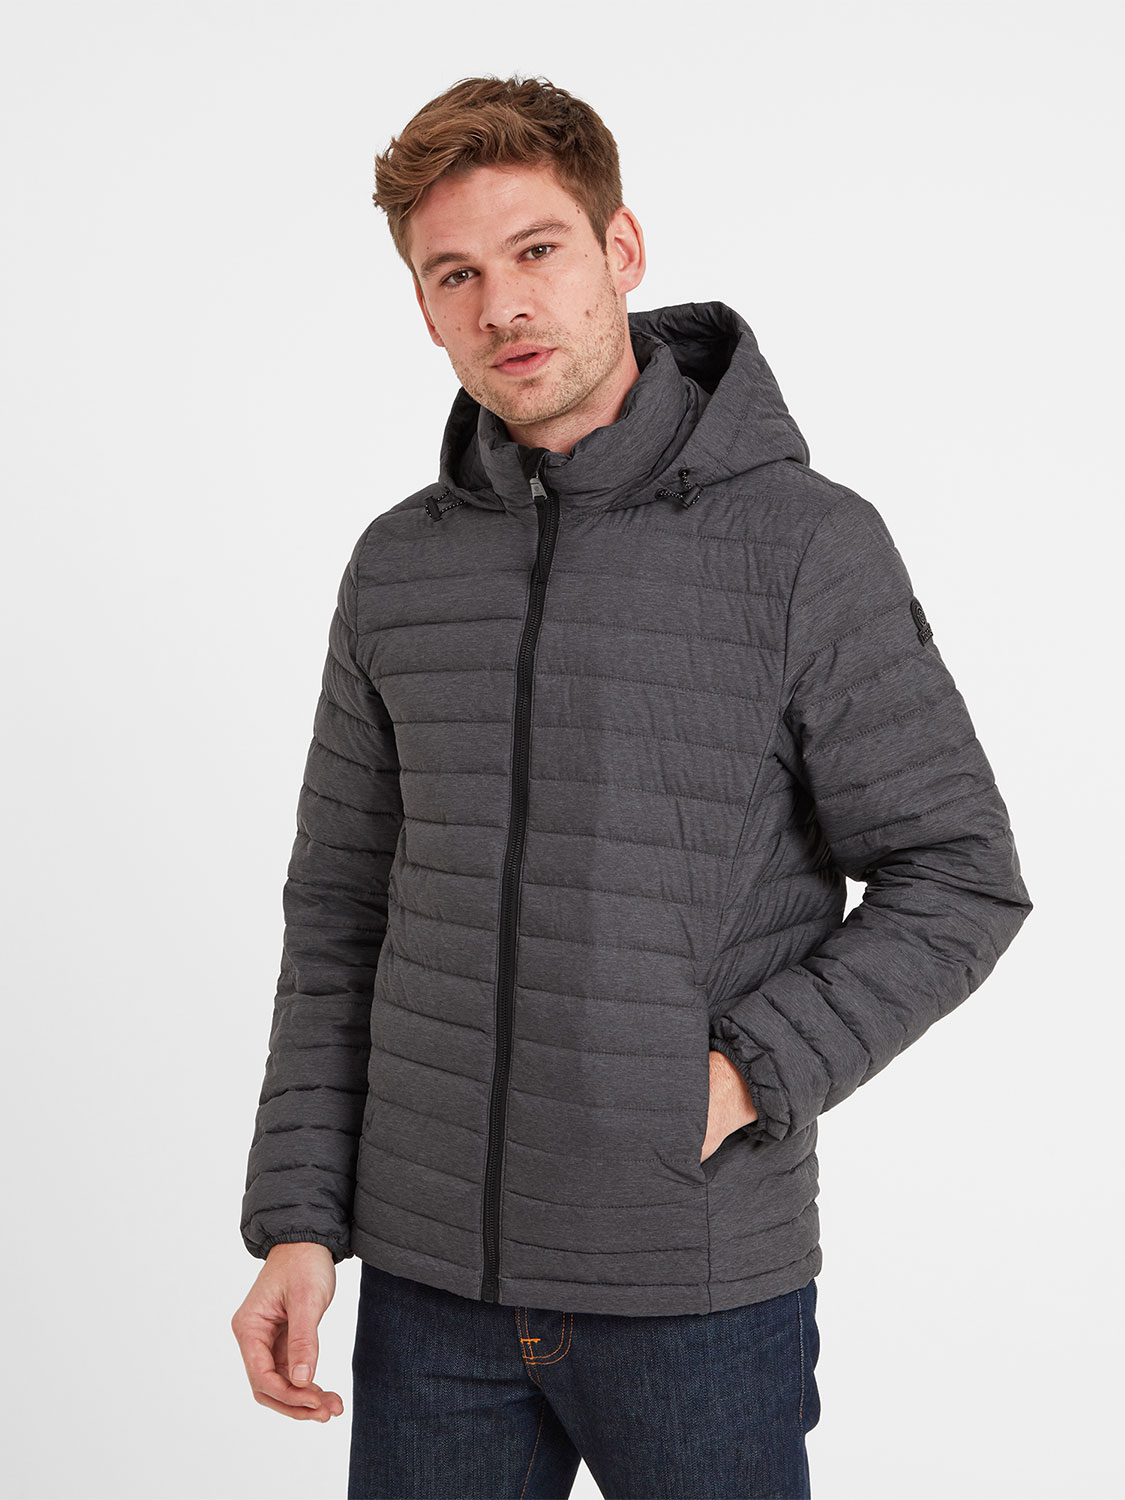 Bowburn Padded Jacket - Size: 2XL Men’s Grey Tog24